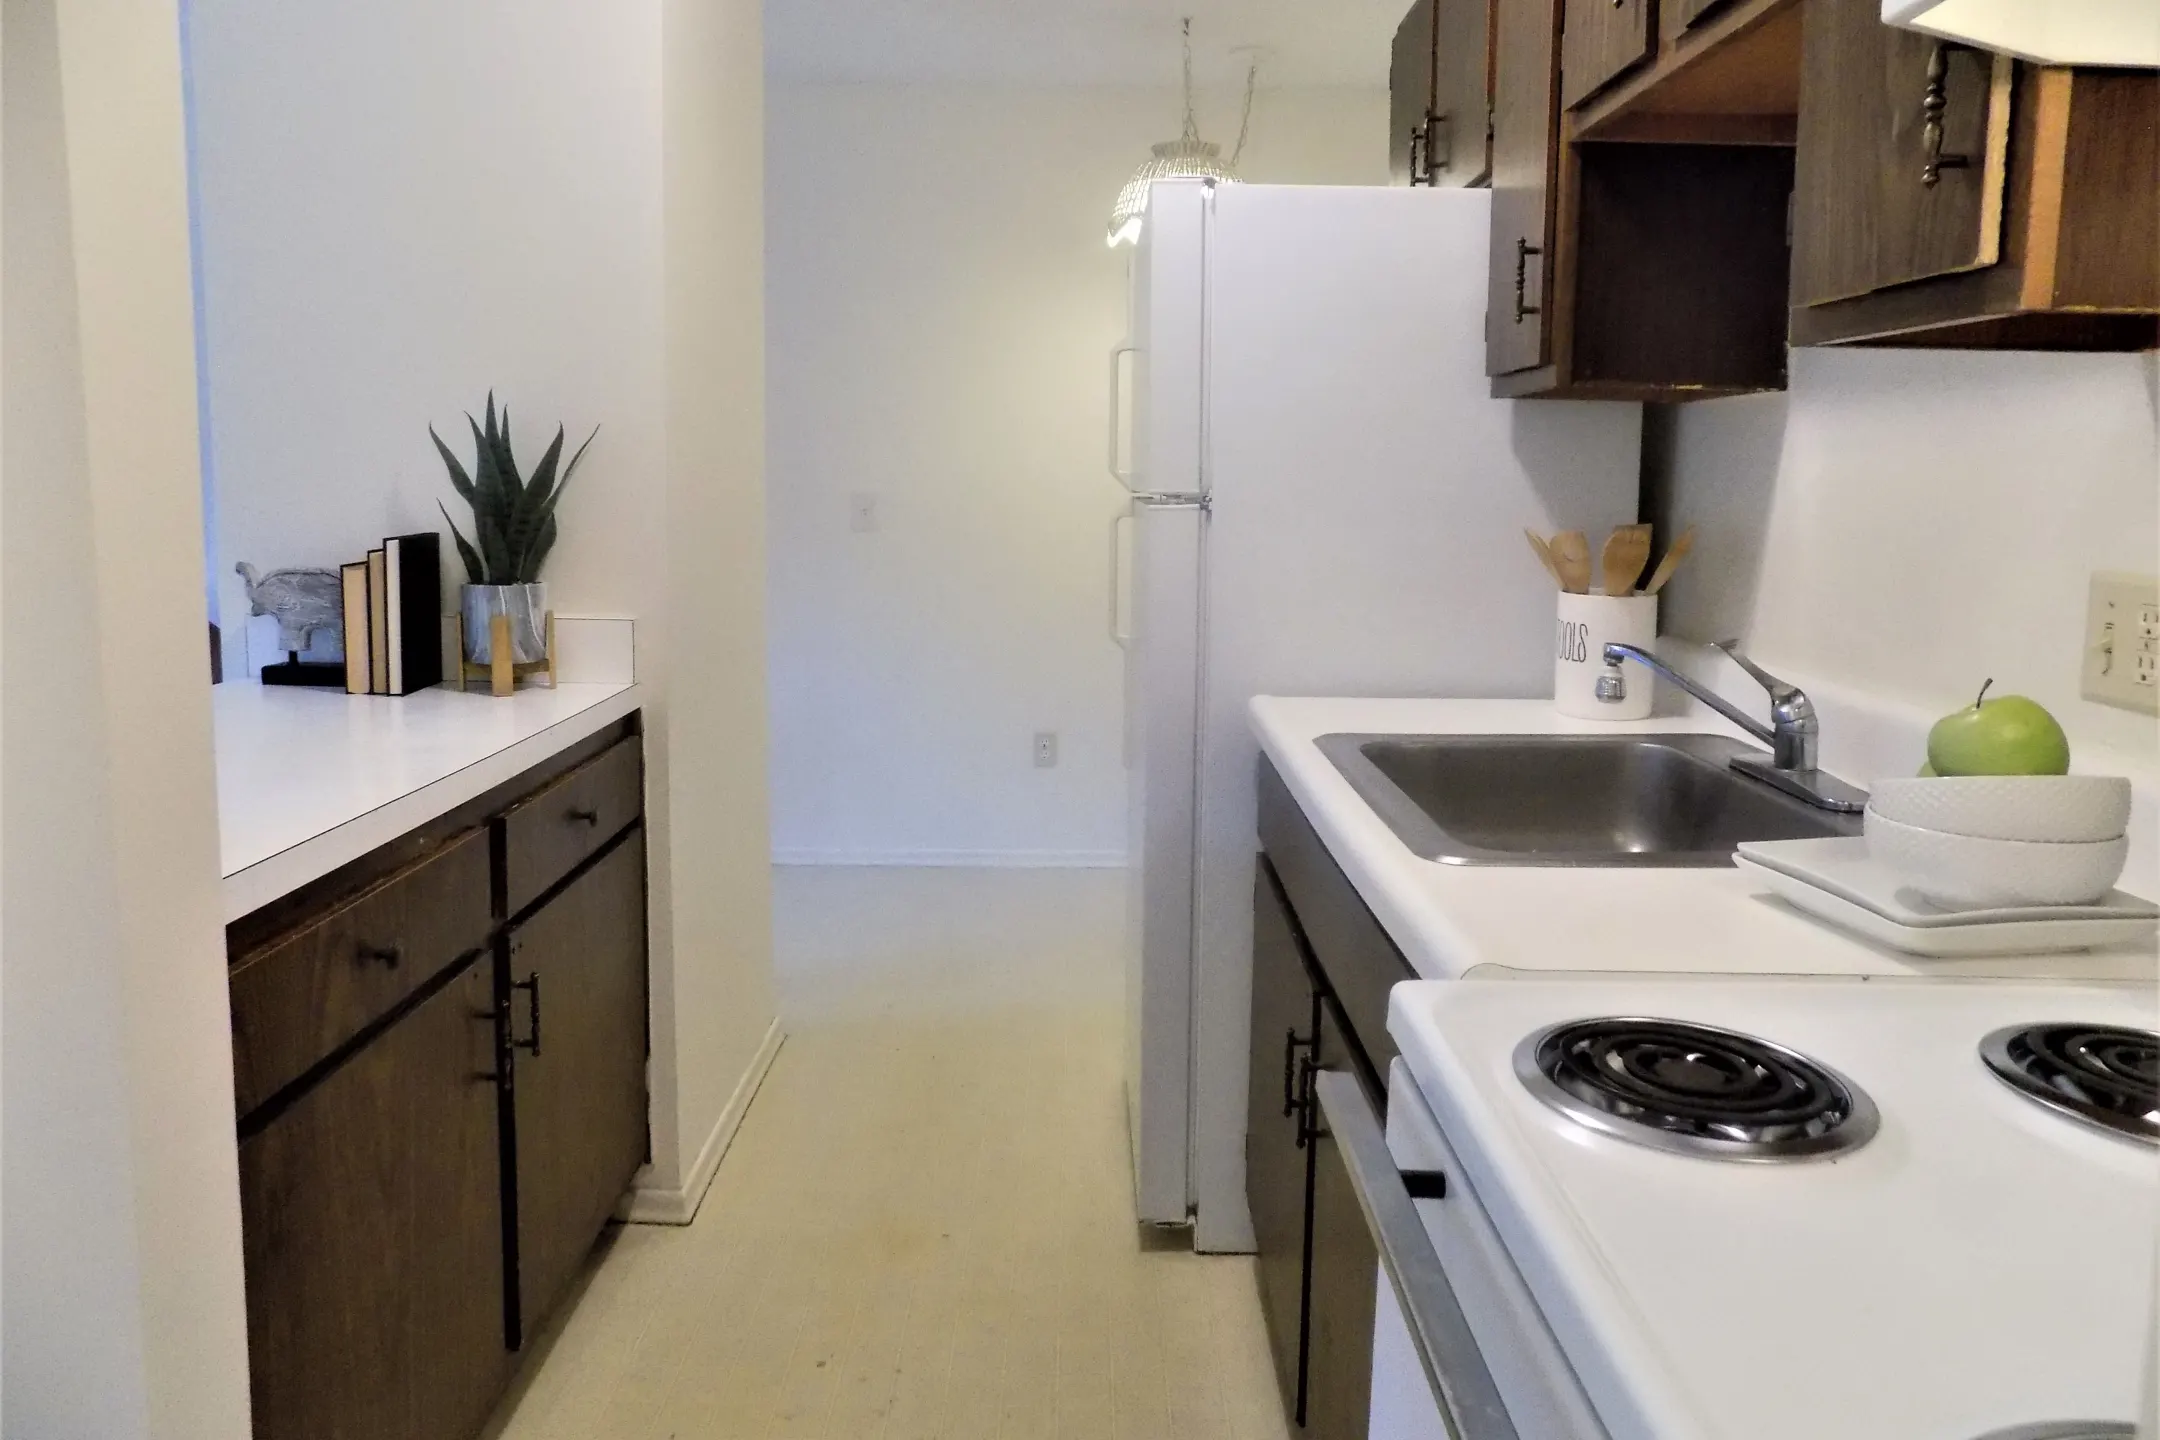 Kitchen - Royal Apartments - Le Roy, NY